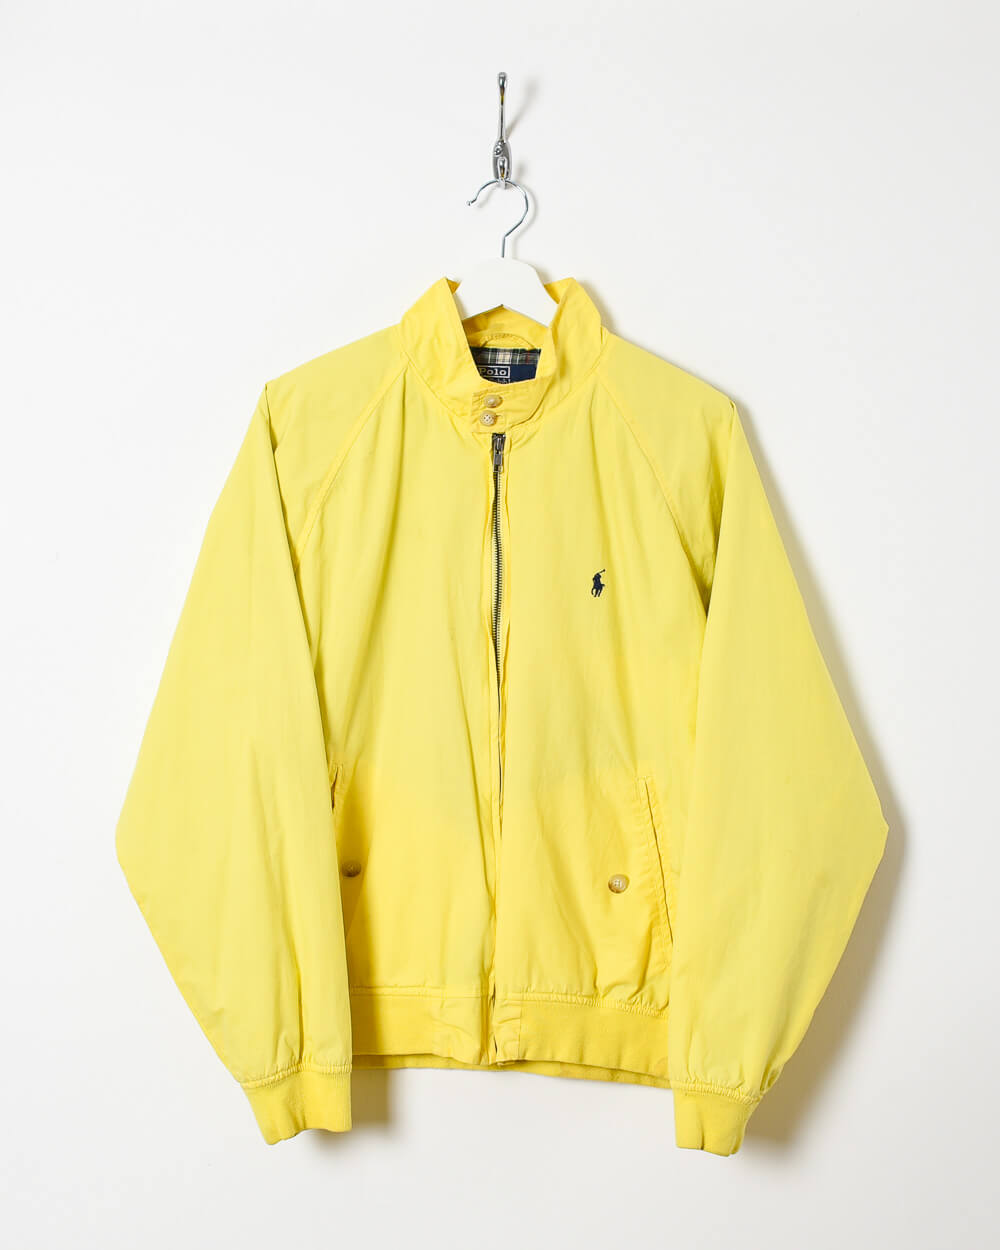 Yellow Ralph Lauren Harrington Jacket - Medium